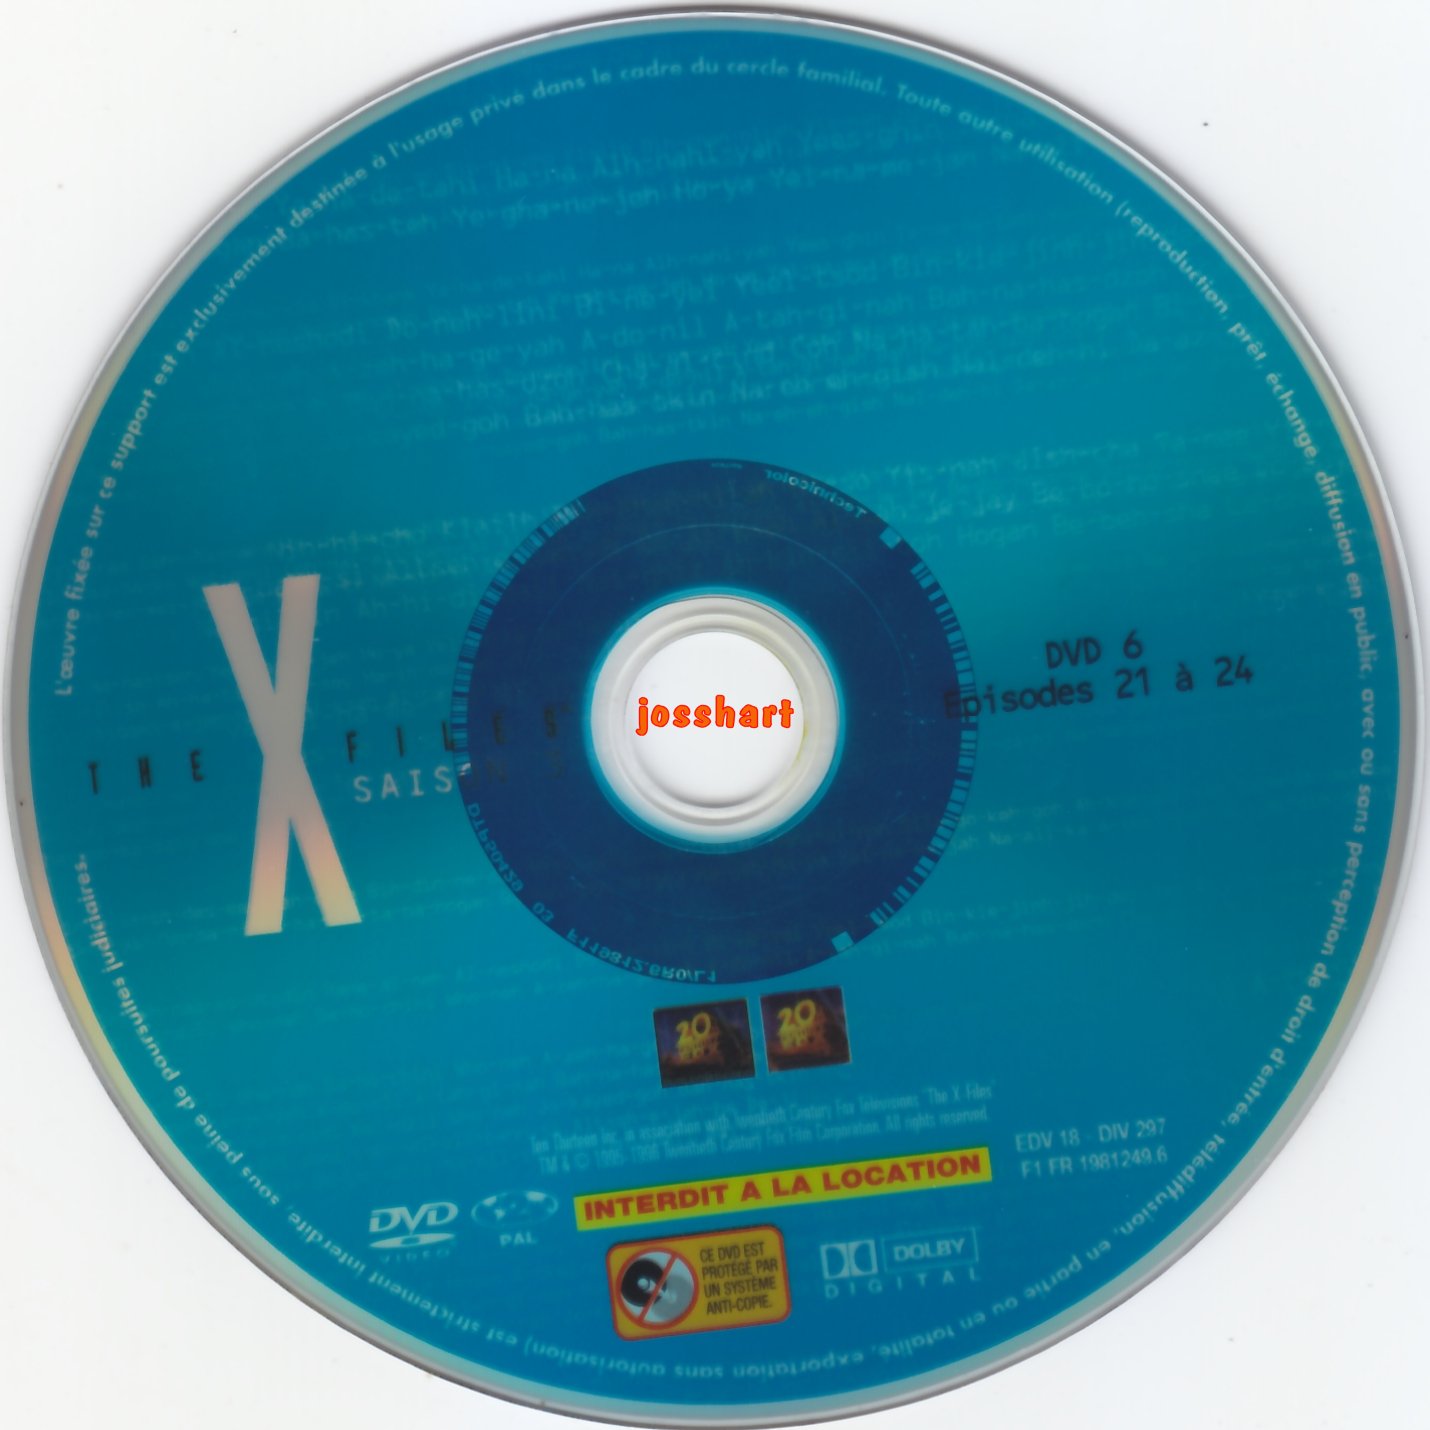 The X Files Saison 3 DVD 6 v2